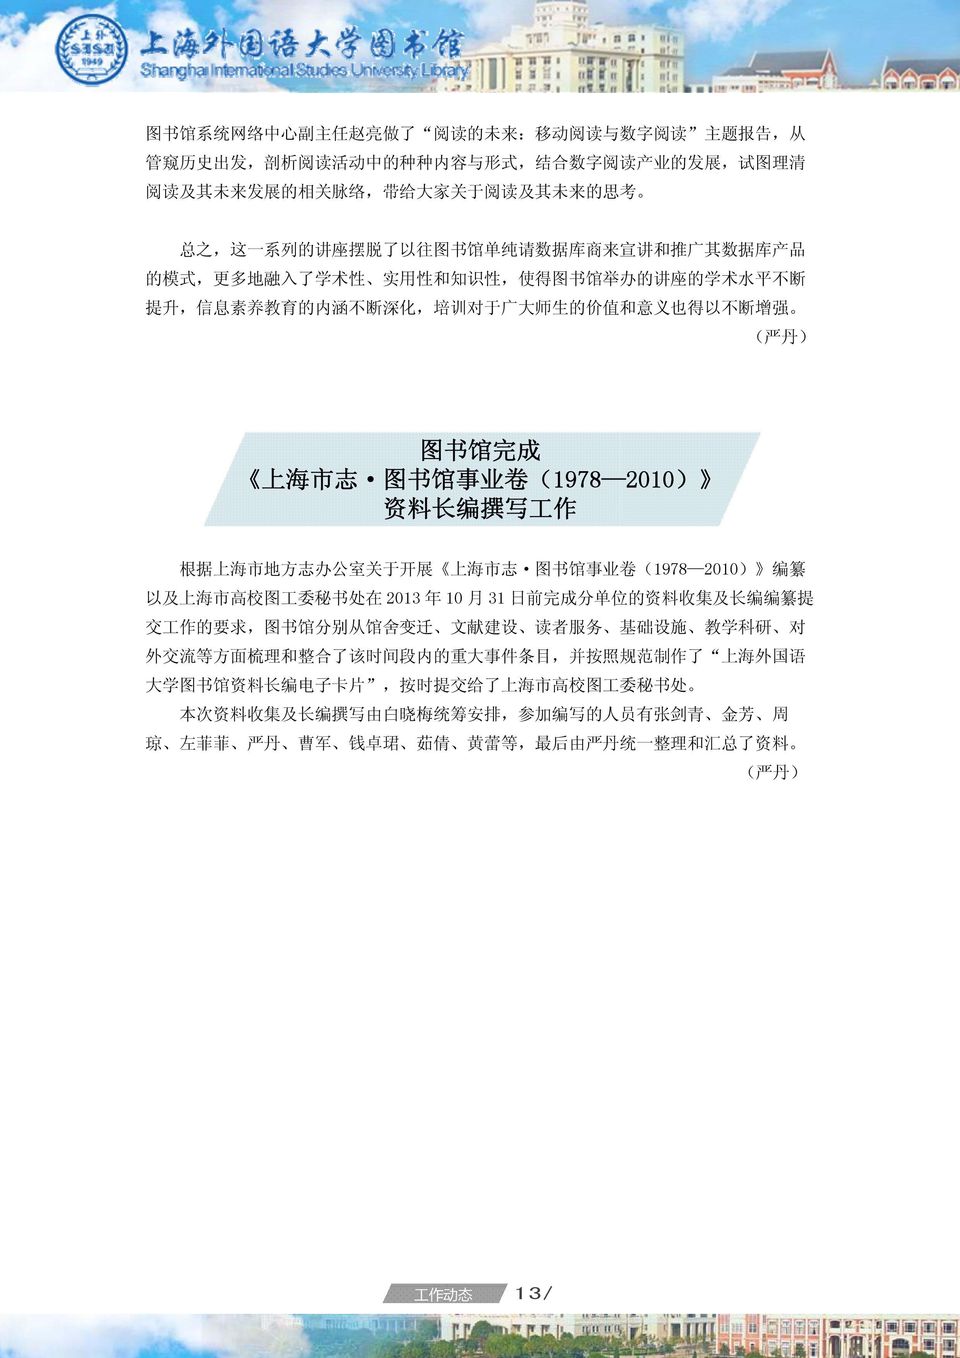 生 的 价 值 和 意 义 也 得 以 不 断 增 强 ( 严 丹 ) 图 书 馆 完 成 上 海 市 志 图 书 馆 事 业 卷 (1978 2010) 资 料 长 编 撰 写 工 作 根 据 上 海 市 地 方 志 办 公 室 关 于 开 展 上 海 市 志 图 书 馆 事 业 卷 (1978 2010) 编 纂 以 及 上 海 市 高 校 图 工 委 秘 书 处 在 2013 年 10 月